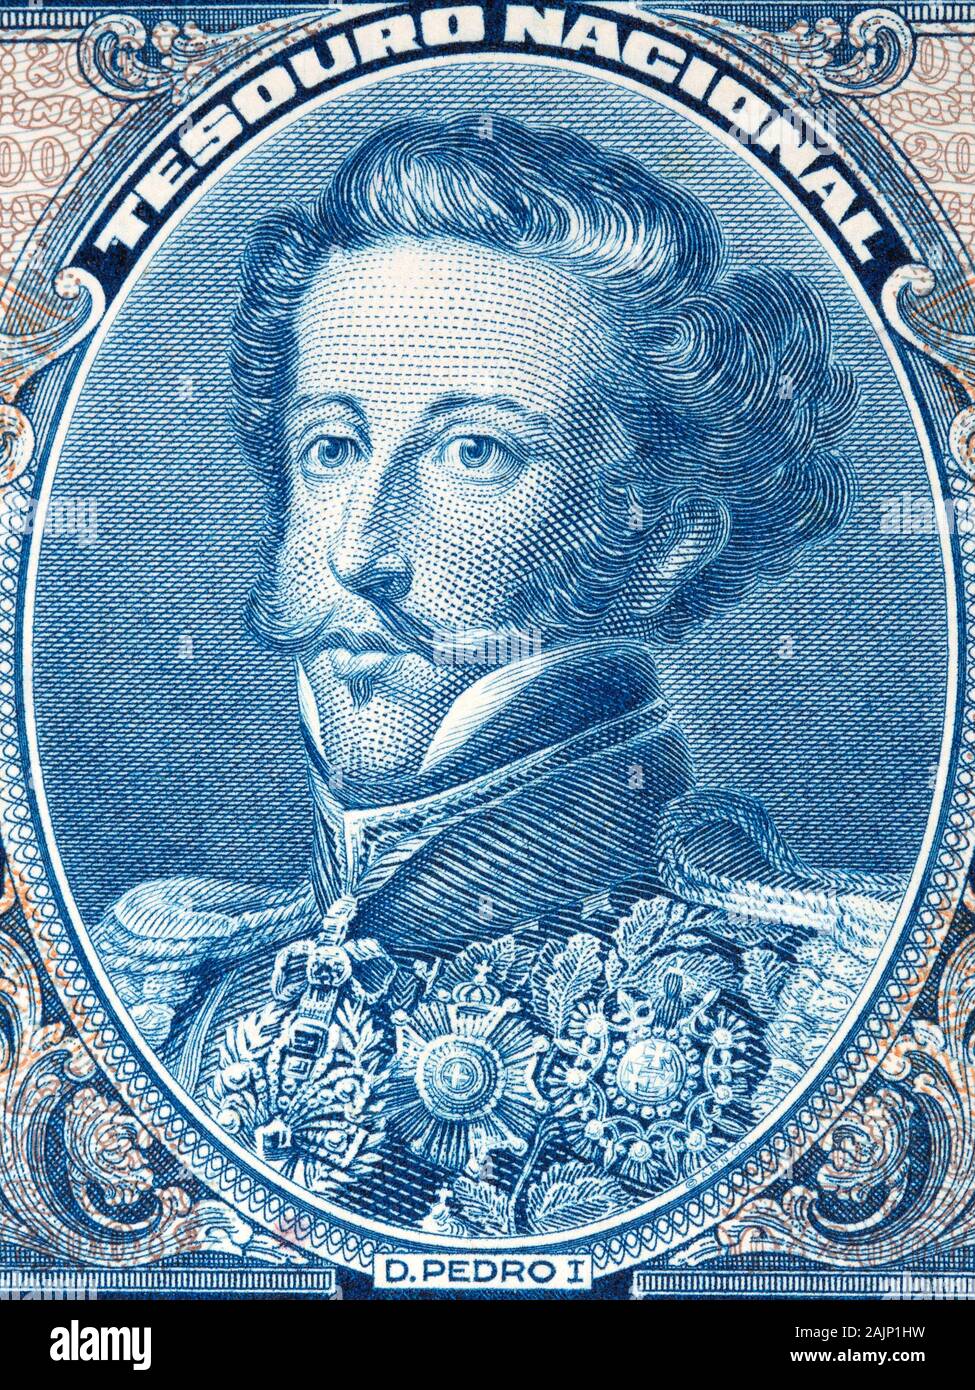 Pedro I du Brésil un portrait de l'argent brésilien Banque D'Images